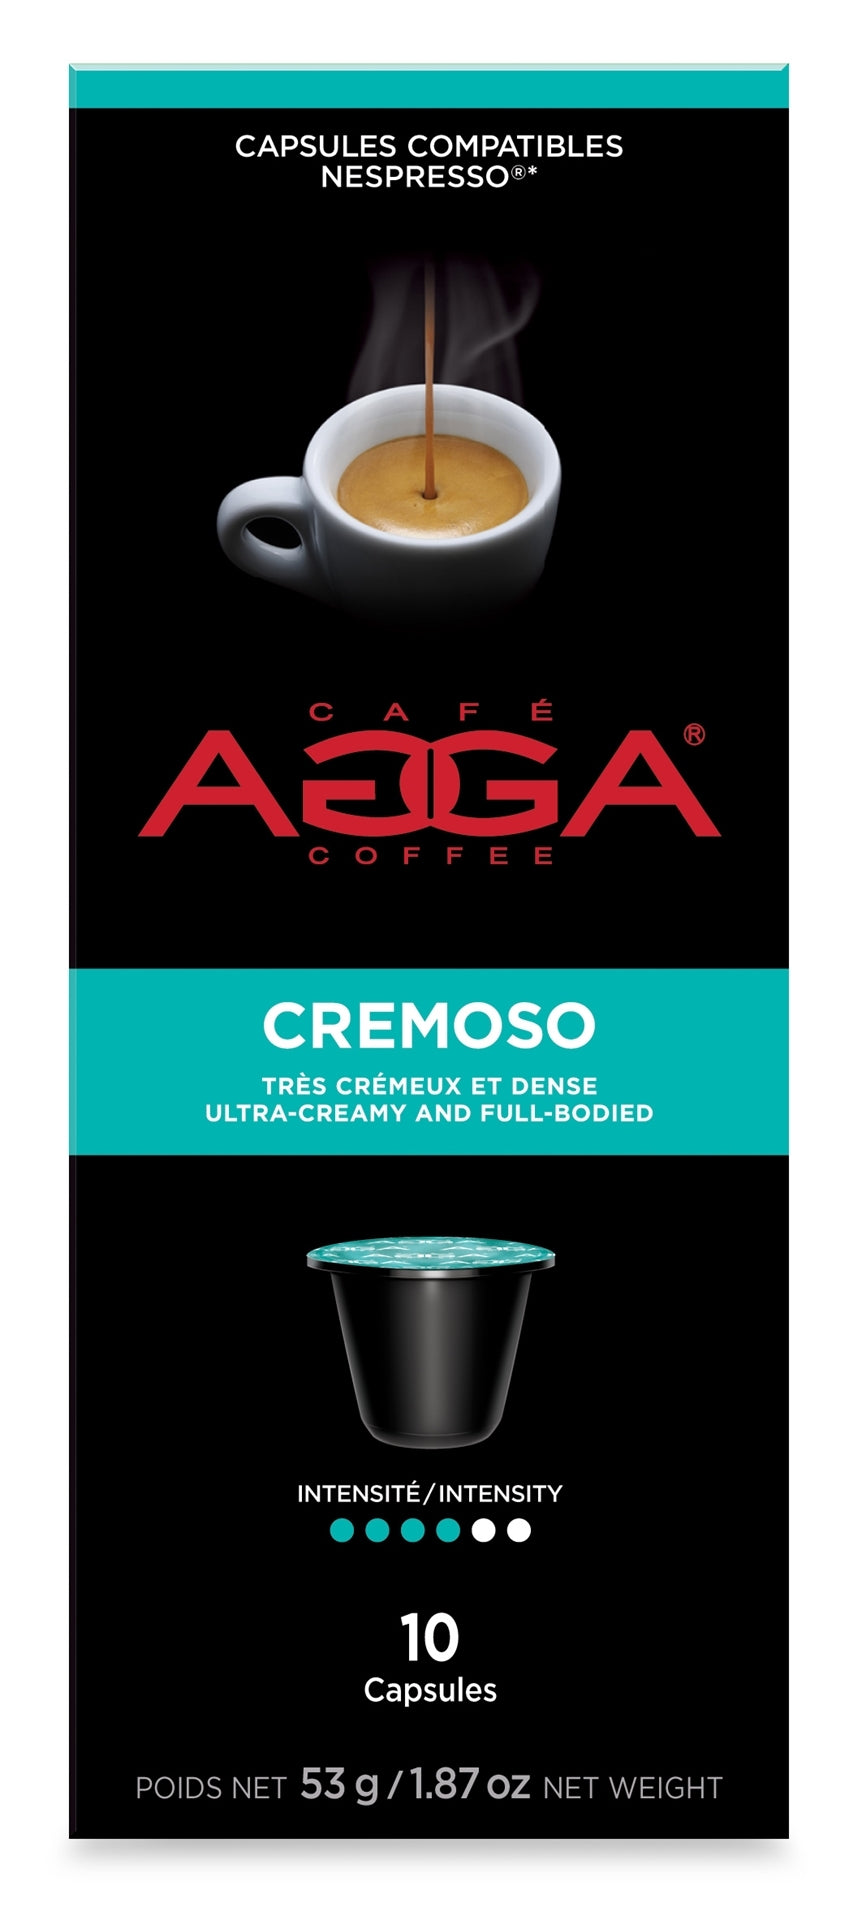 CAPSULES Compatibles Nespresso